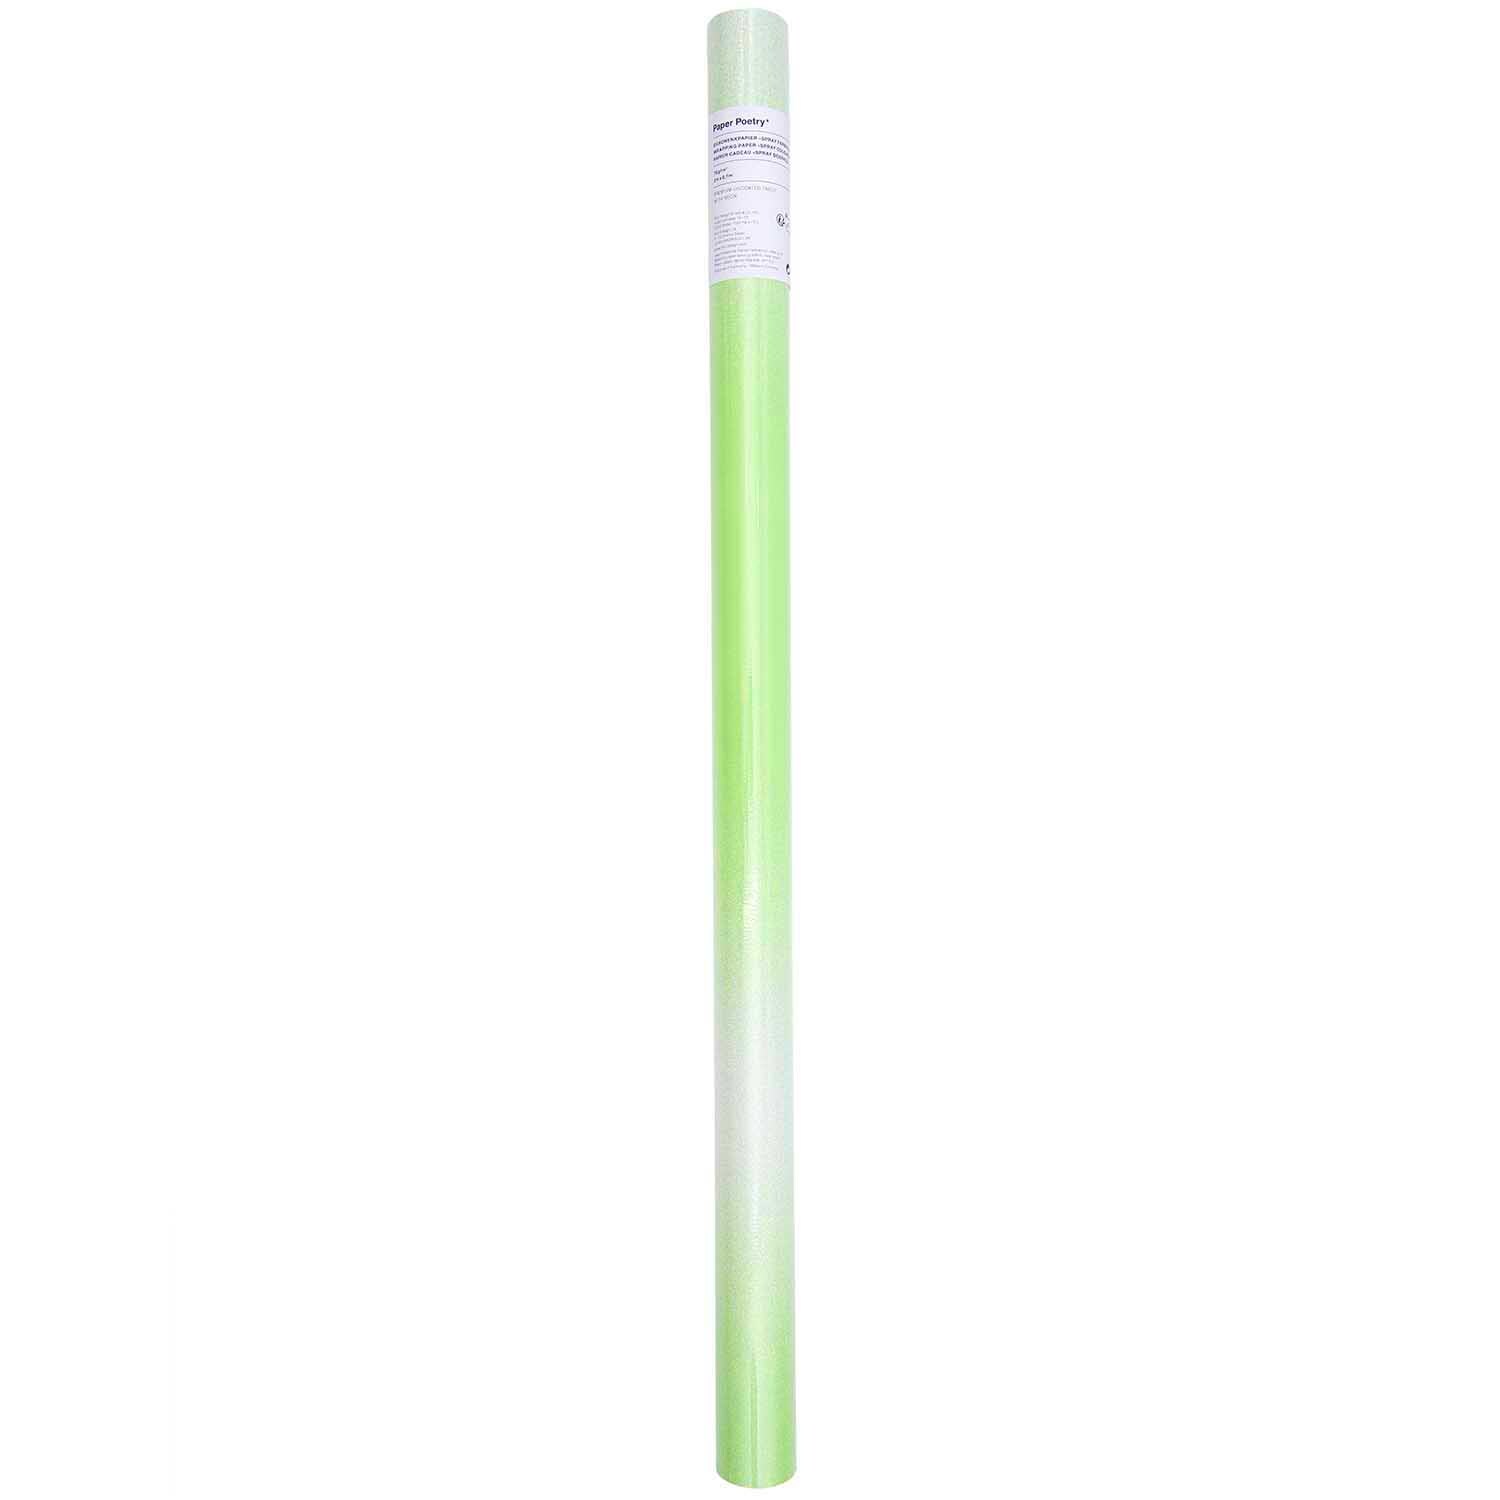 Paper Poetry Geschenkpapier Spray Farbverlauf neon grün 200x70cm 70g/m²